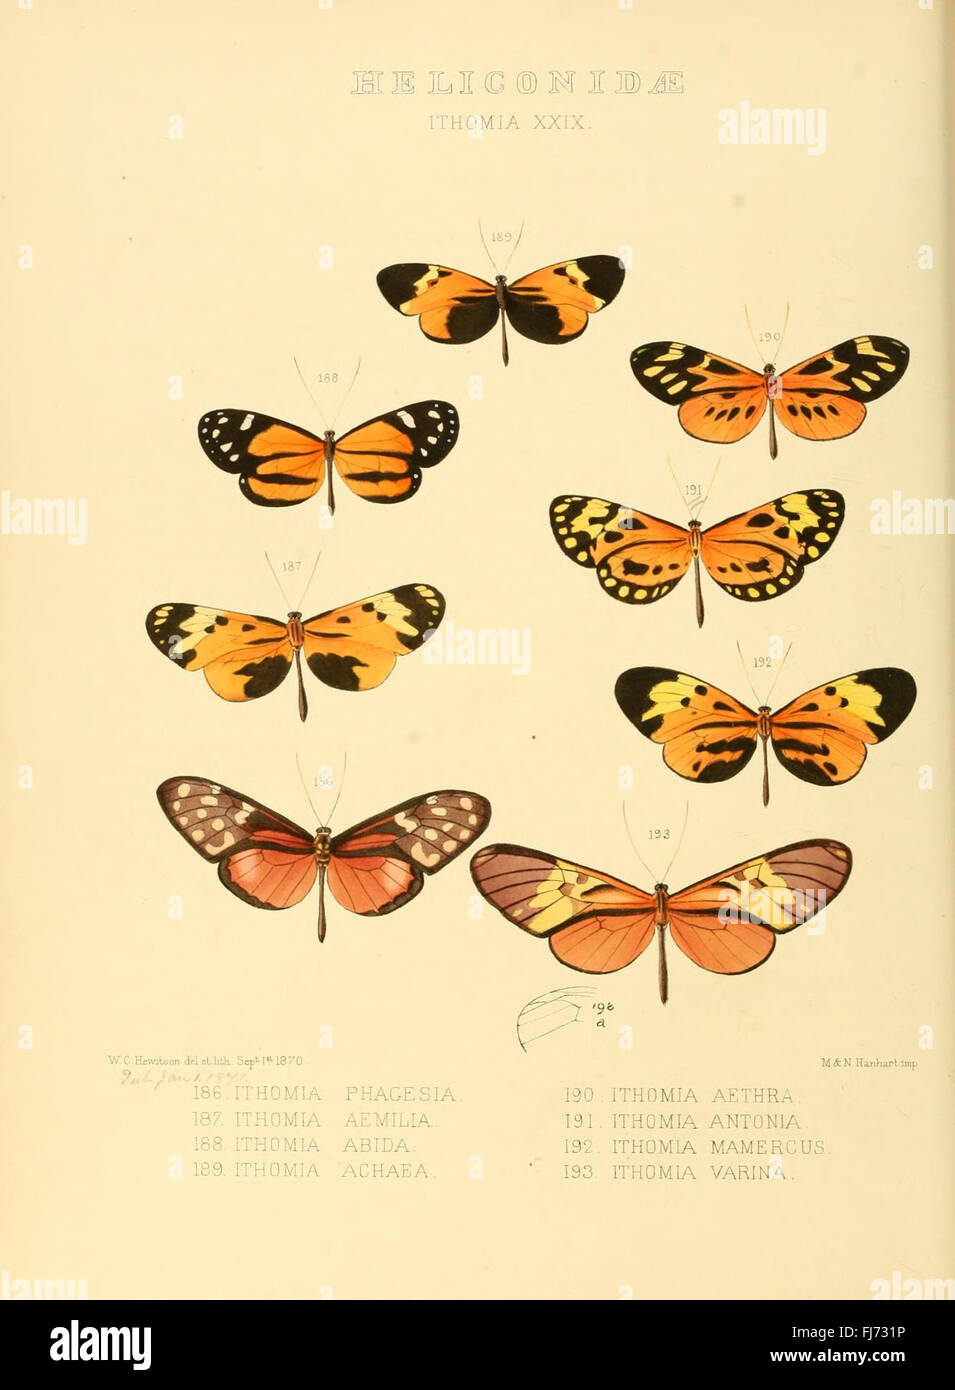 Illustrazioni di nuove specie di farfalle esotiche (Heliconidae- Ithomia XXIX) Foto Stock